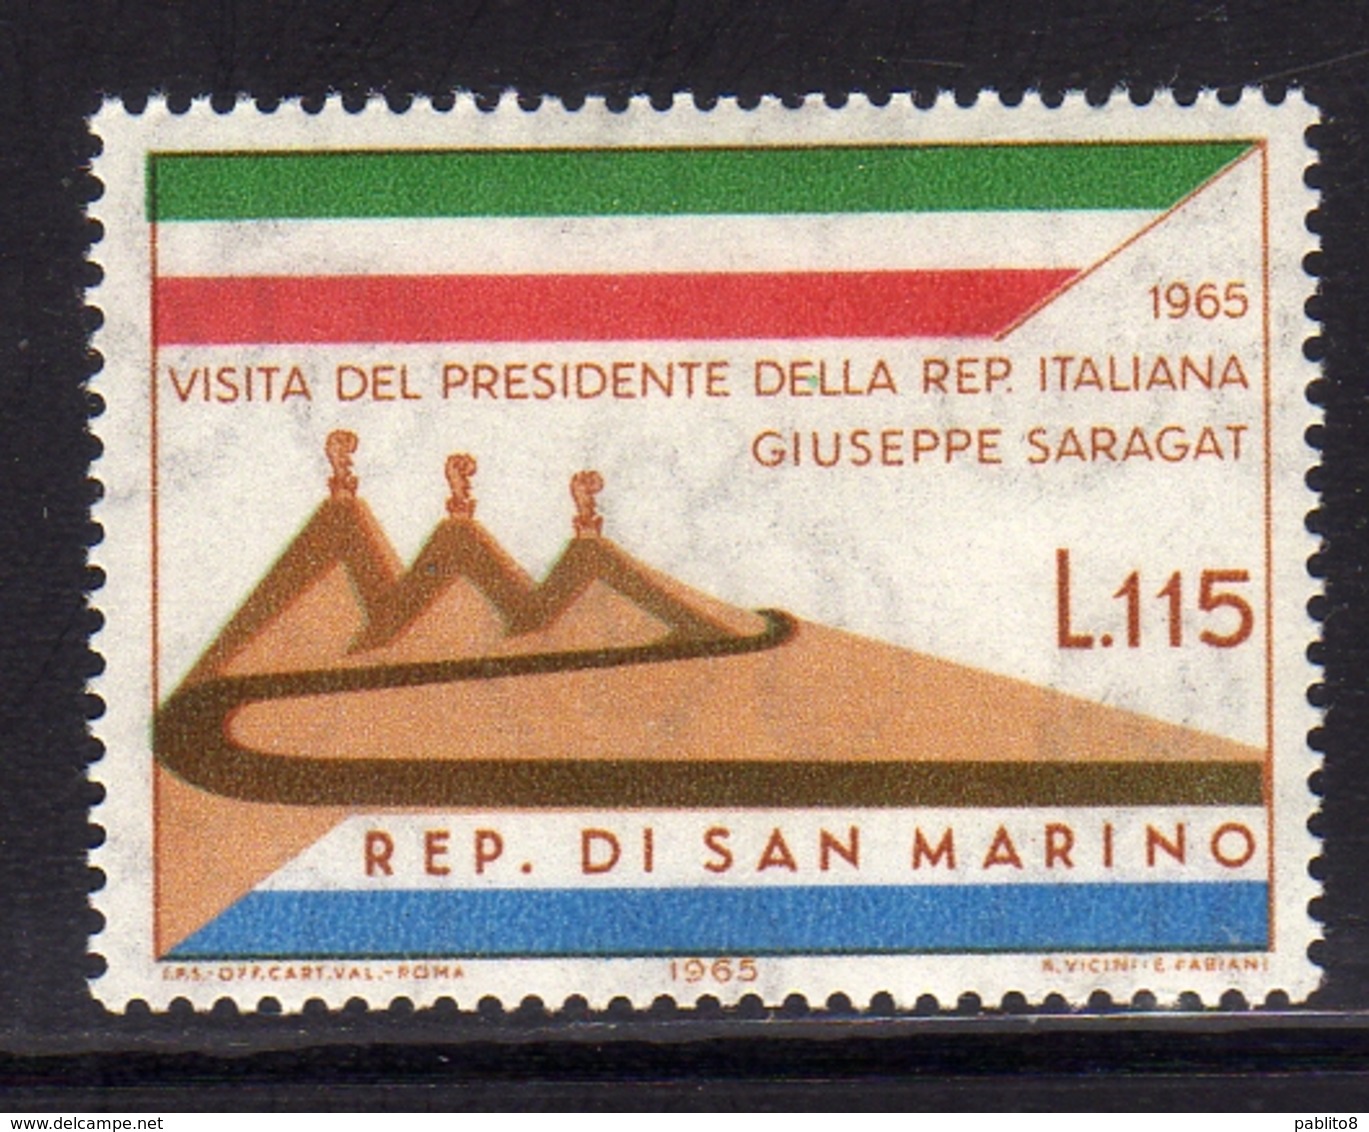 REPUBBLICA DI SAN MARINO 1965 VISITA DEL PRESIDENTE DELLA REPUBBLICA ITALIANA SARAGAT LIRE 115 MNH - Unused Stamps